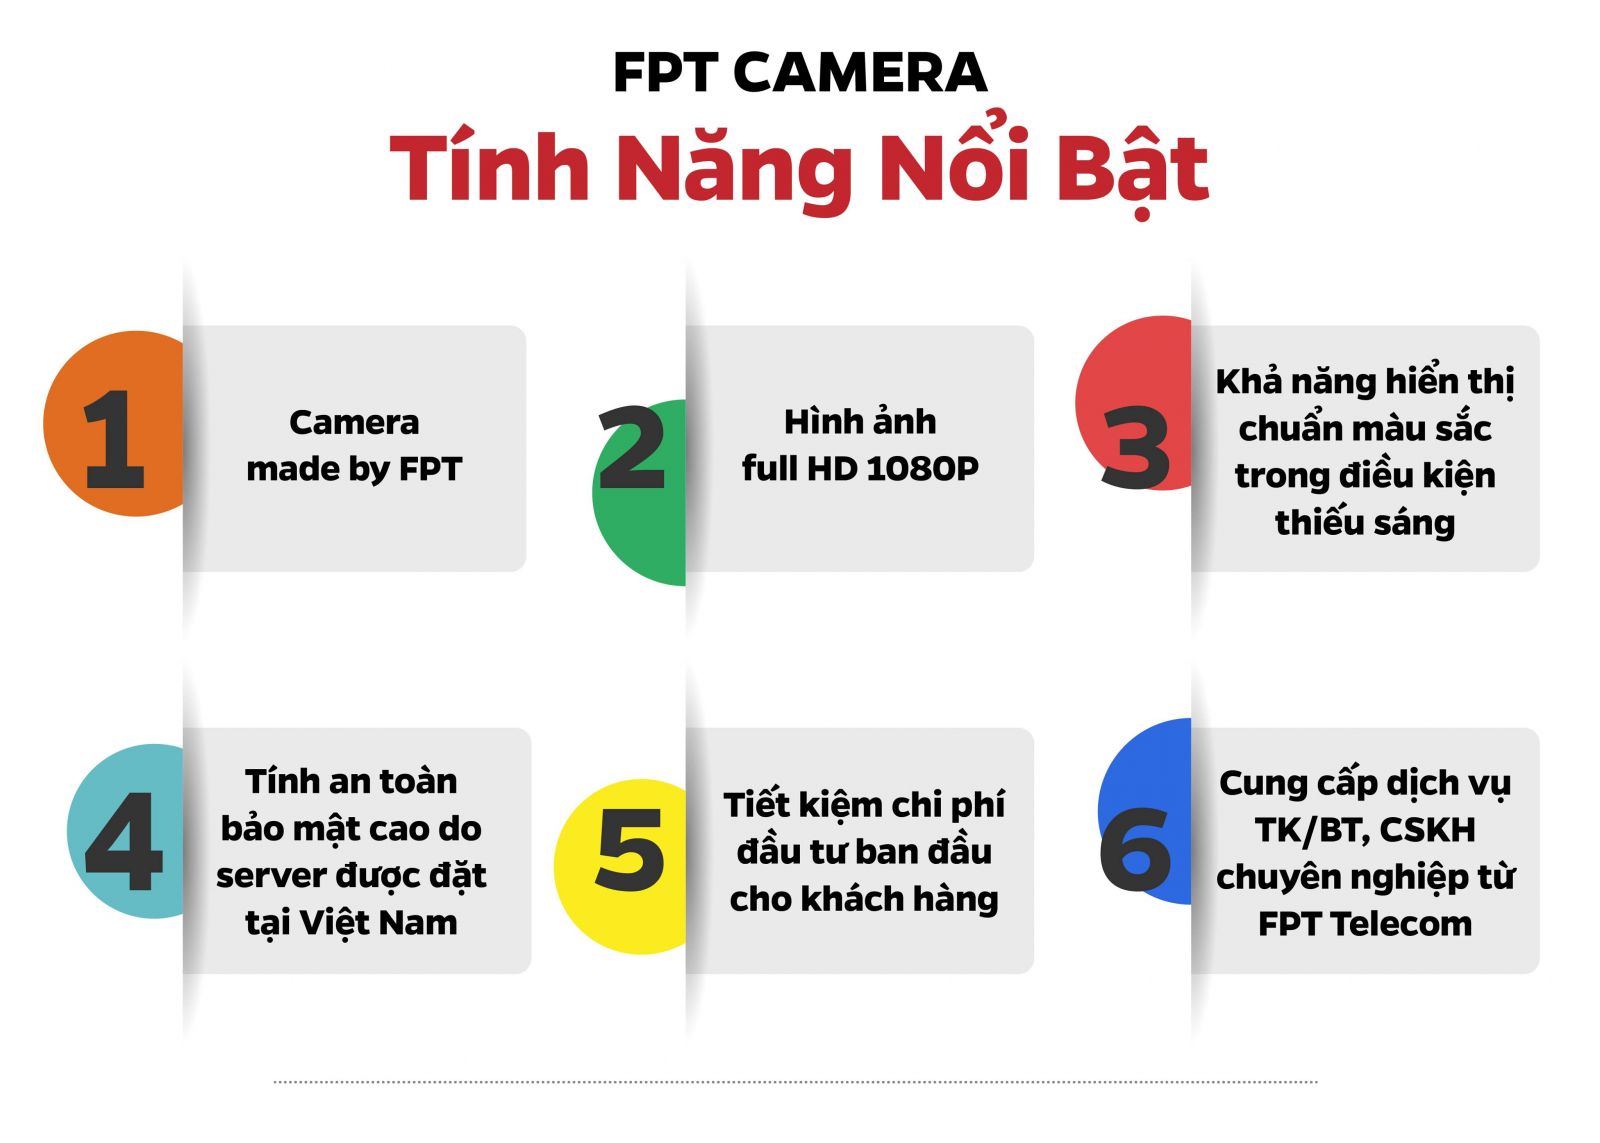 Đặc điểm nổi bật camera FPT